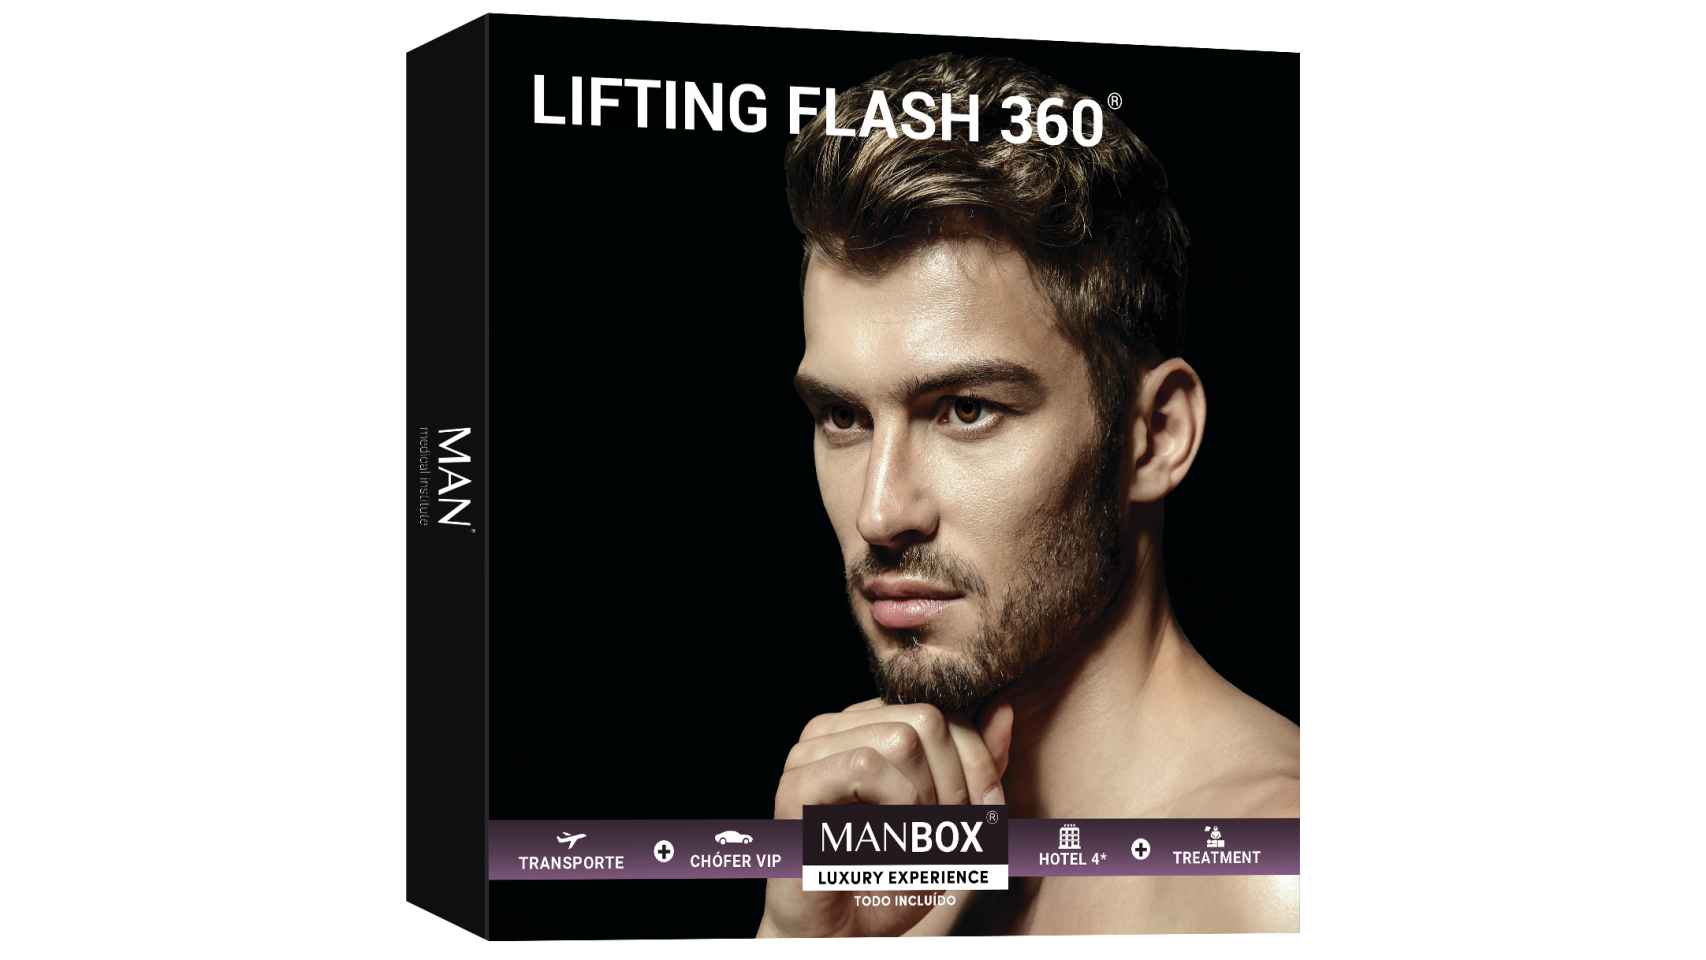 Lifting Flash 360 tonifica y estira la piel, eliminando las arrugas.